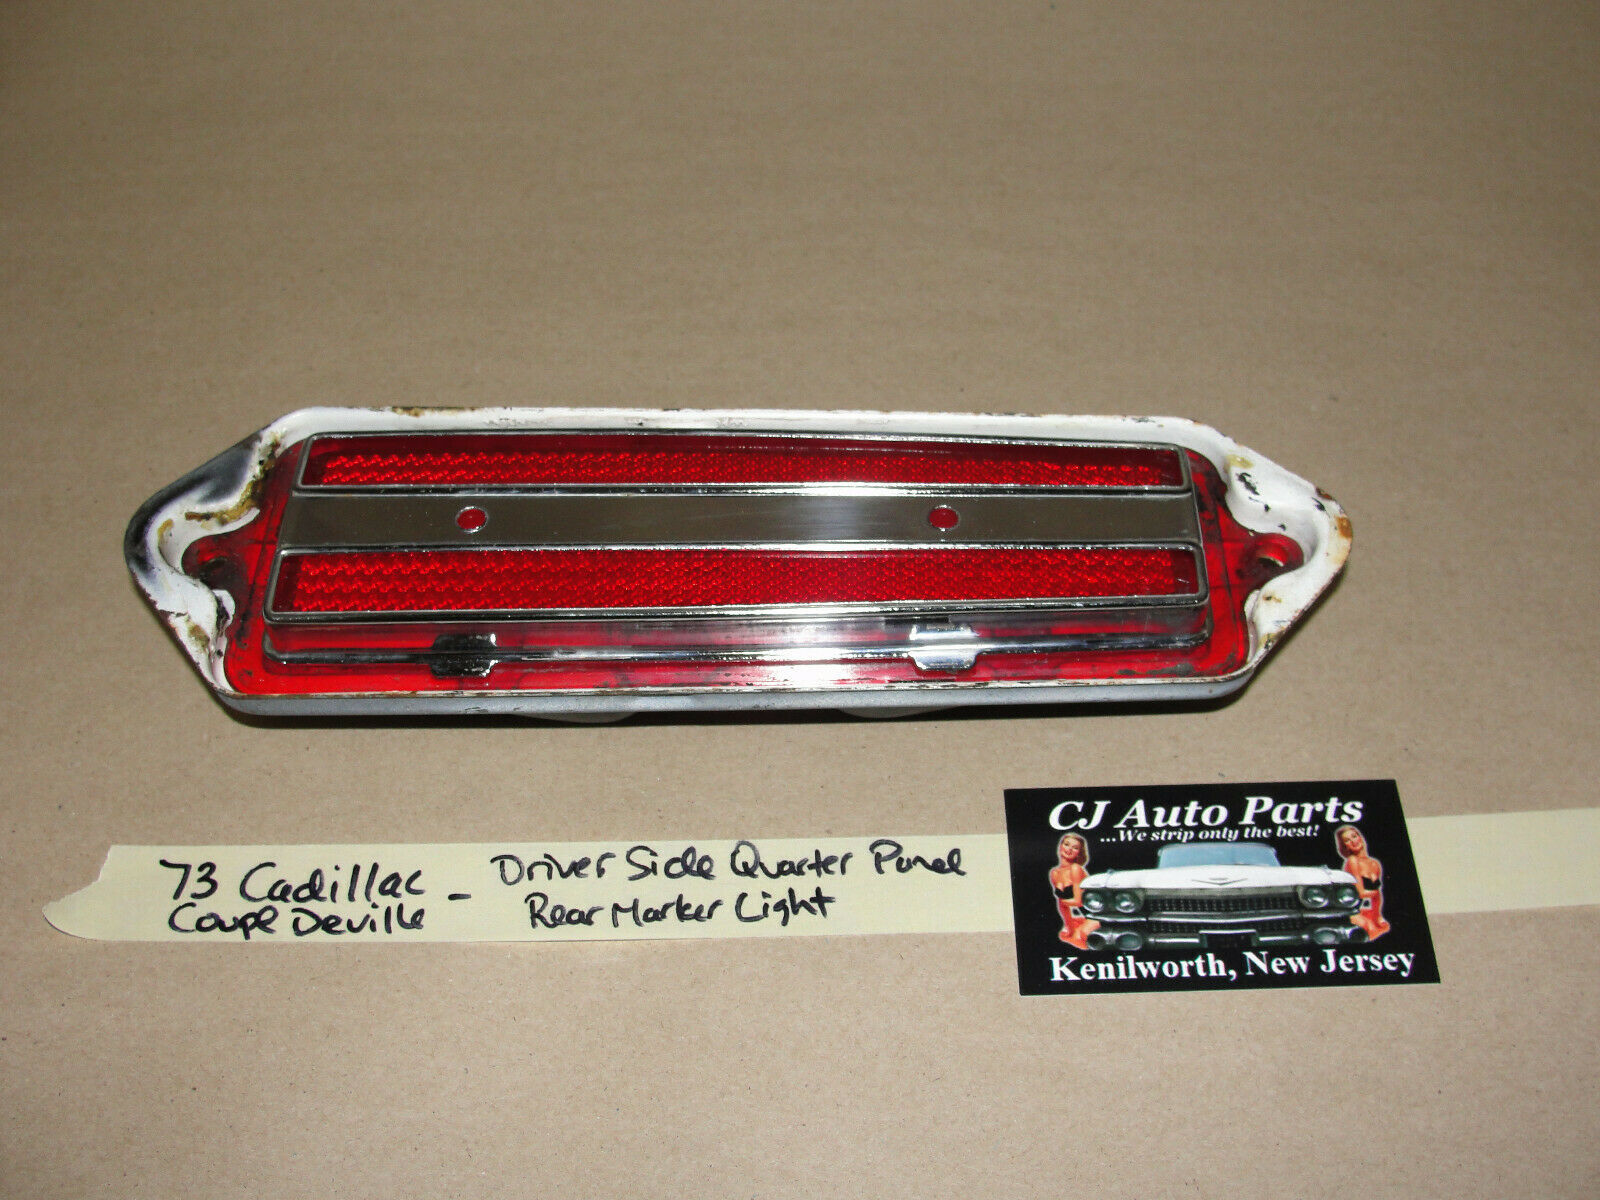 Primary image for 73 Cadillac Deville LEFT DRIVER SIDE REAR QUARTER PANEL MARKER LIGHT LENS TRIM